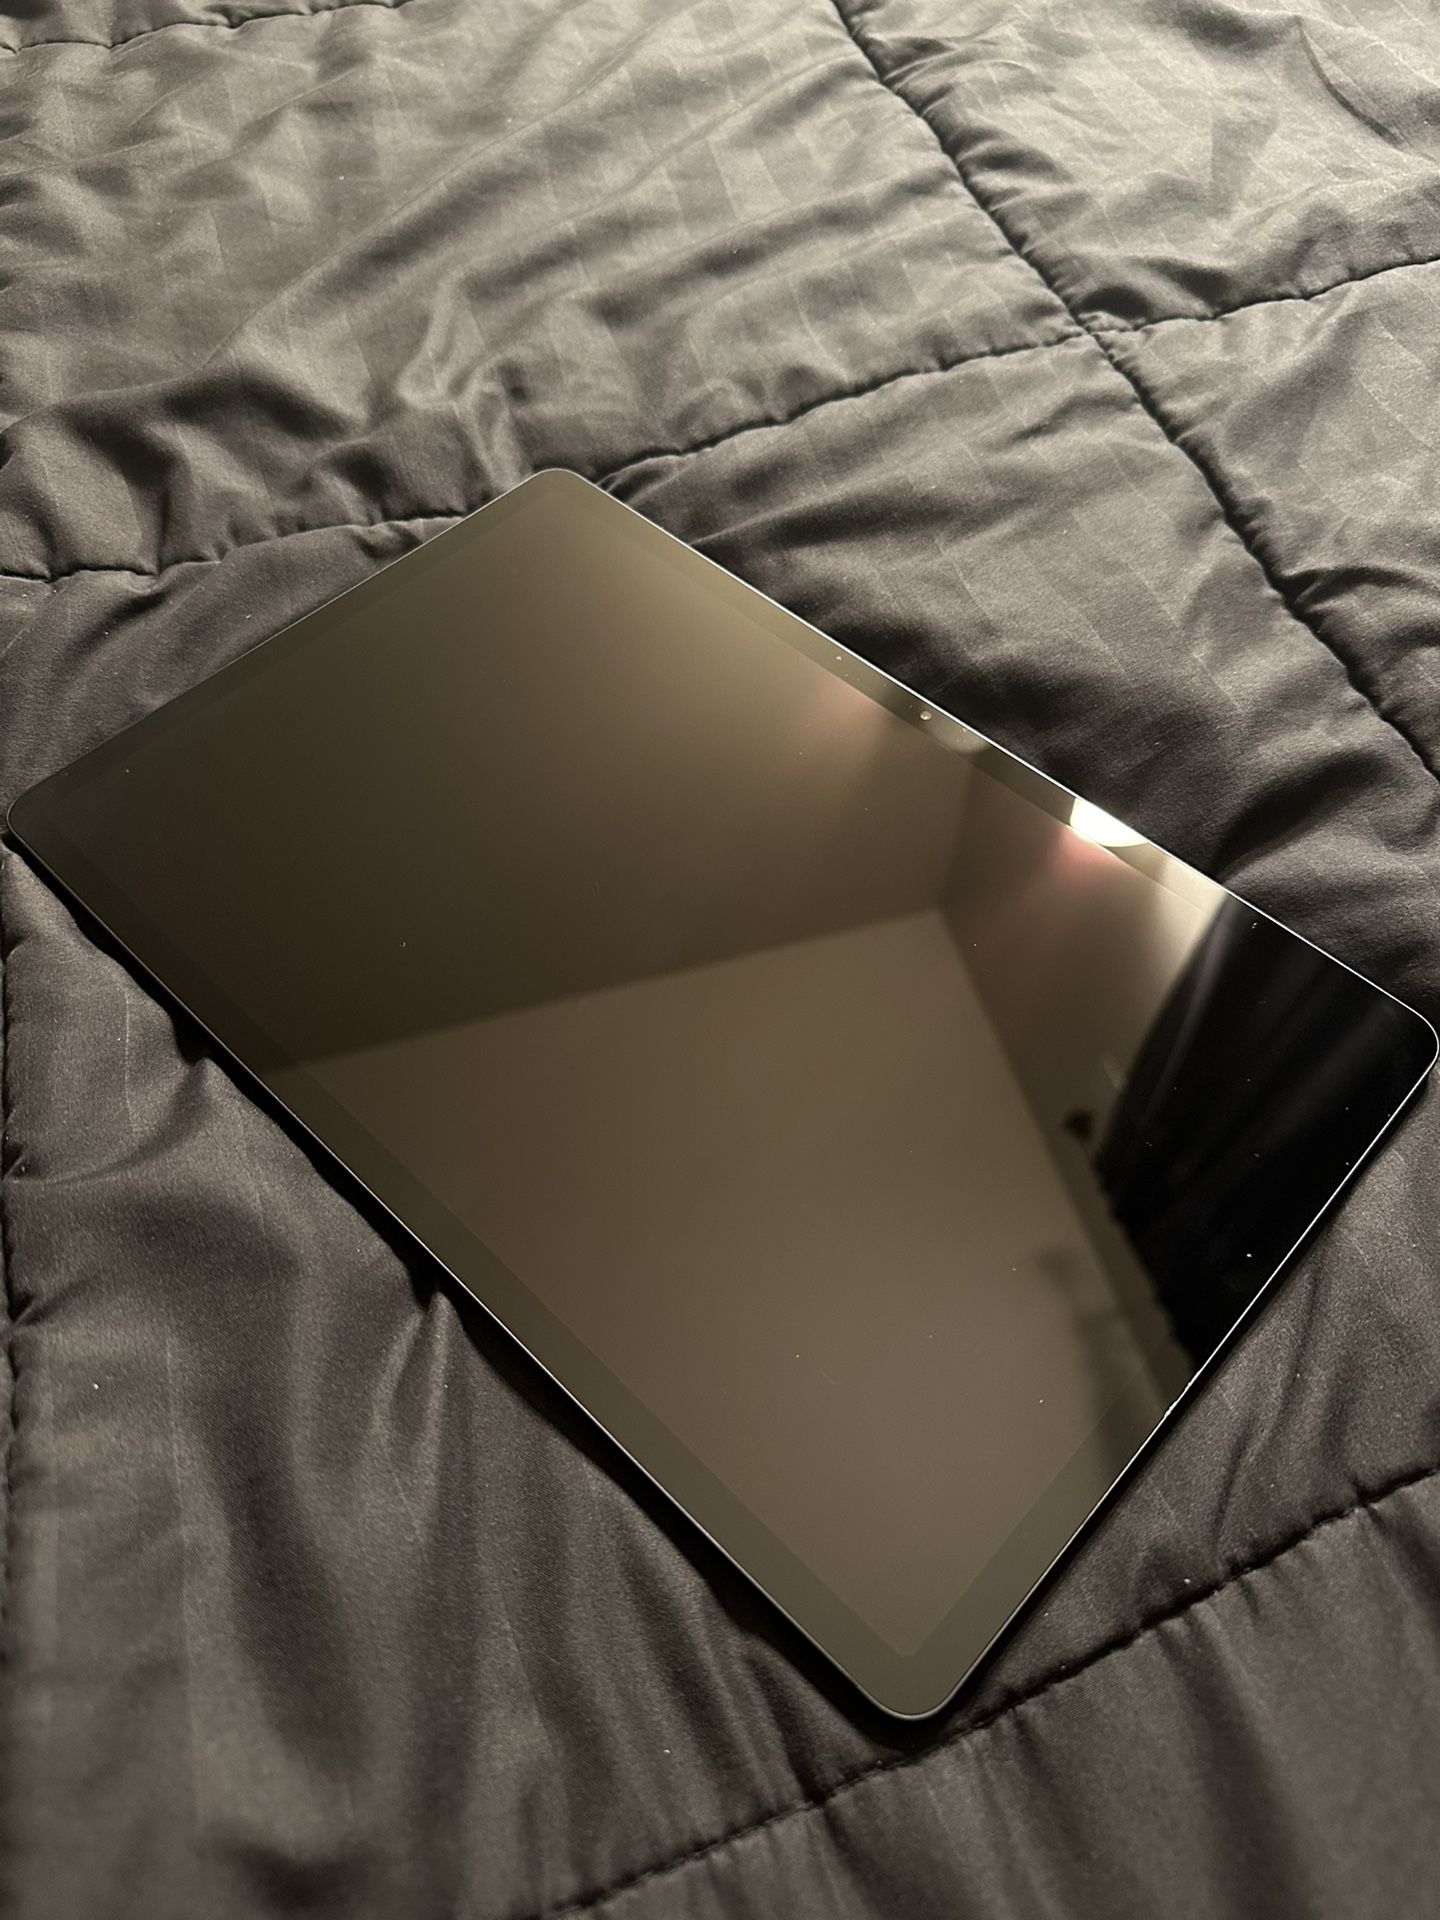 Samsung S7 FE tablet